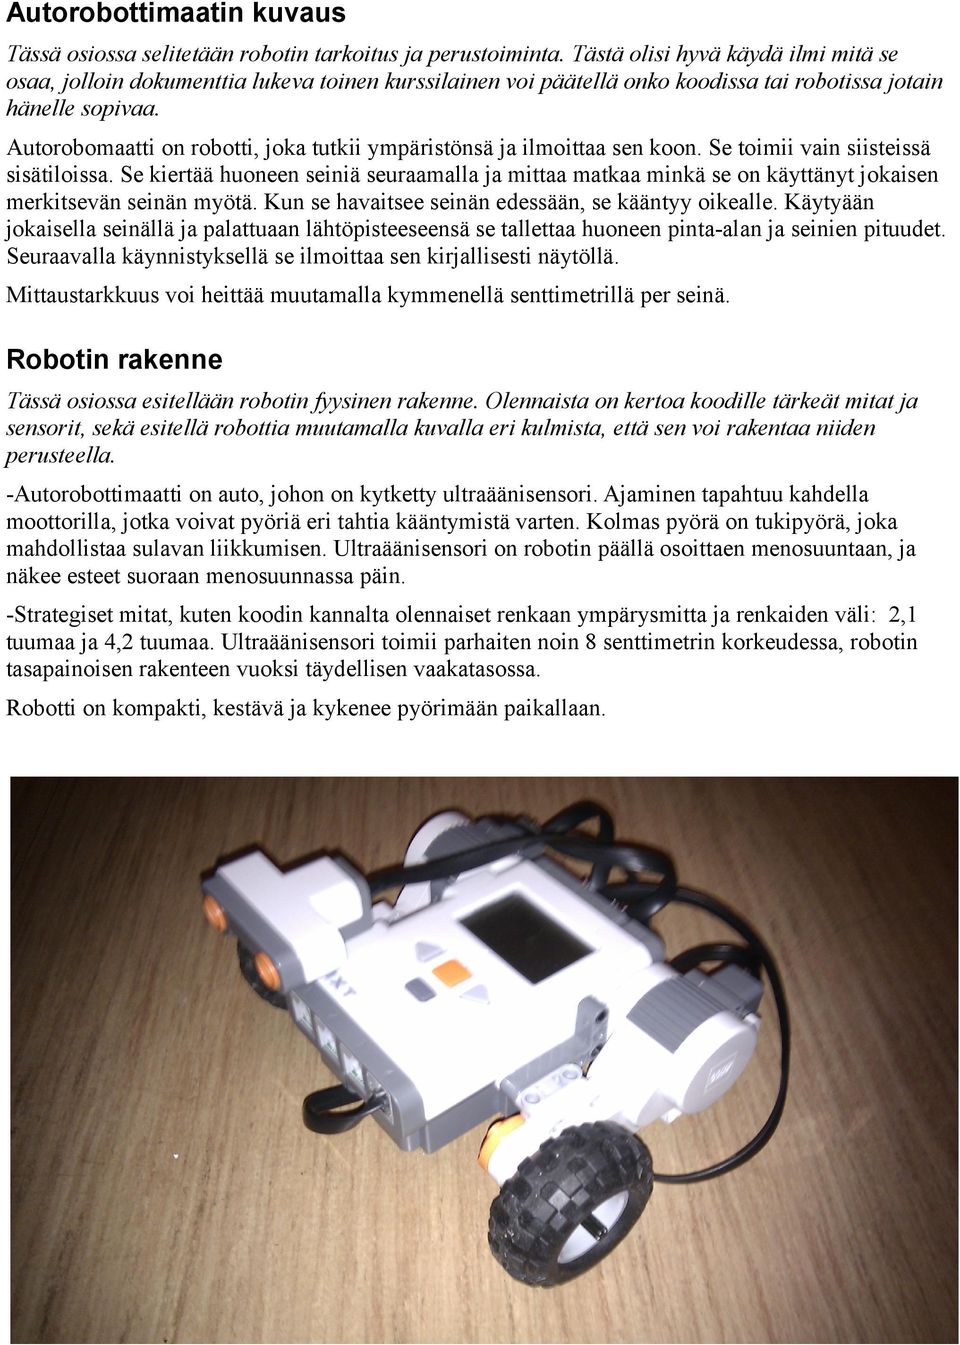 Autorobomaatti on robotti, joka tutkii ympäristönsä ja ilmoittaa sen koon. Se toimii vain siisteissä sisätiloissa.